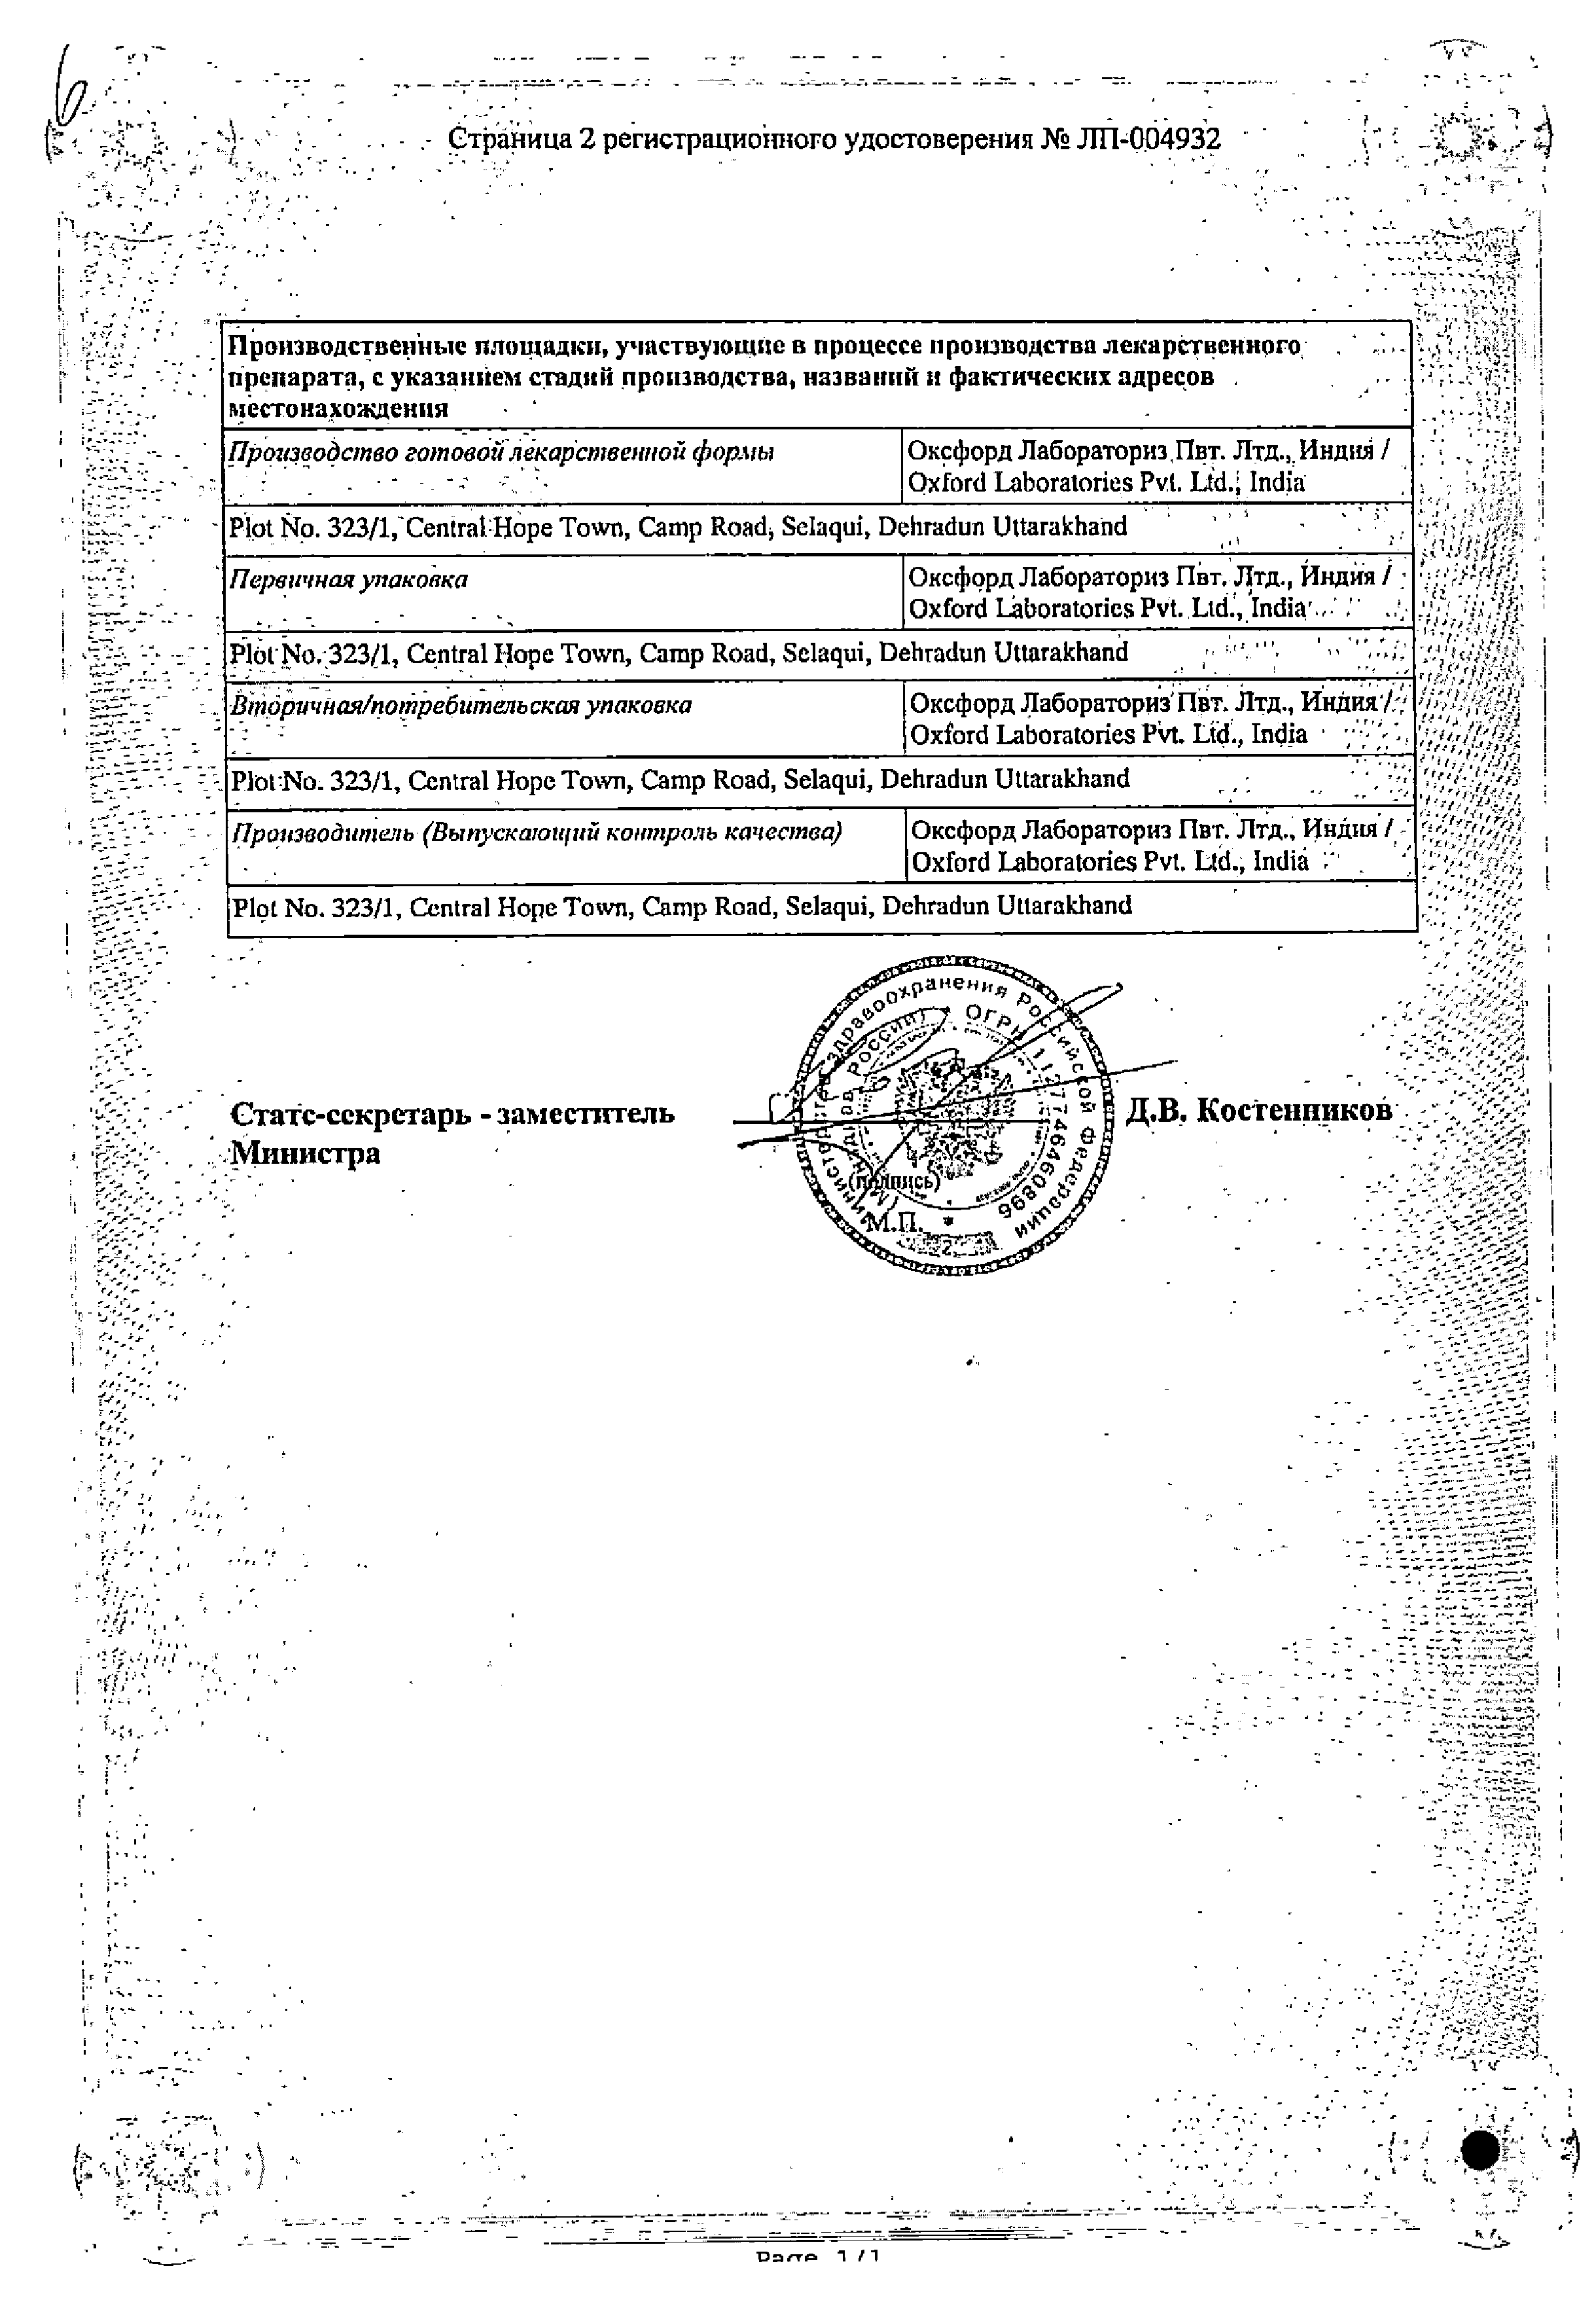 Сеалекс Силденафил сертификат